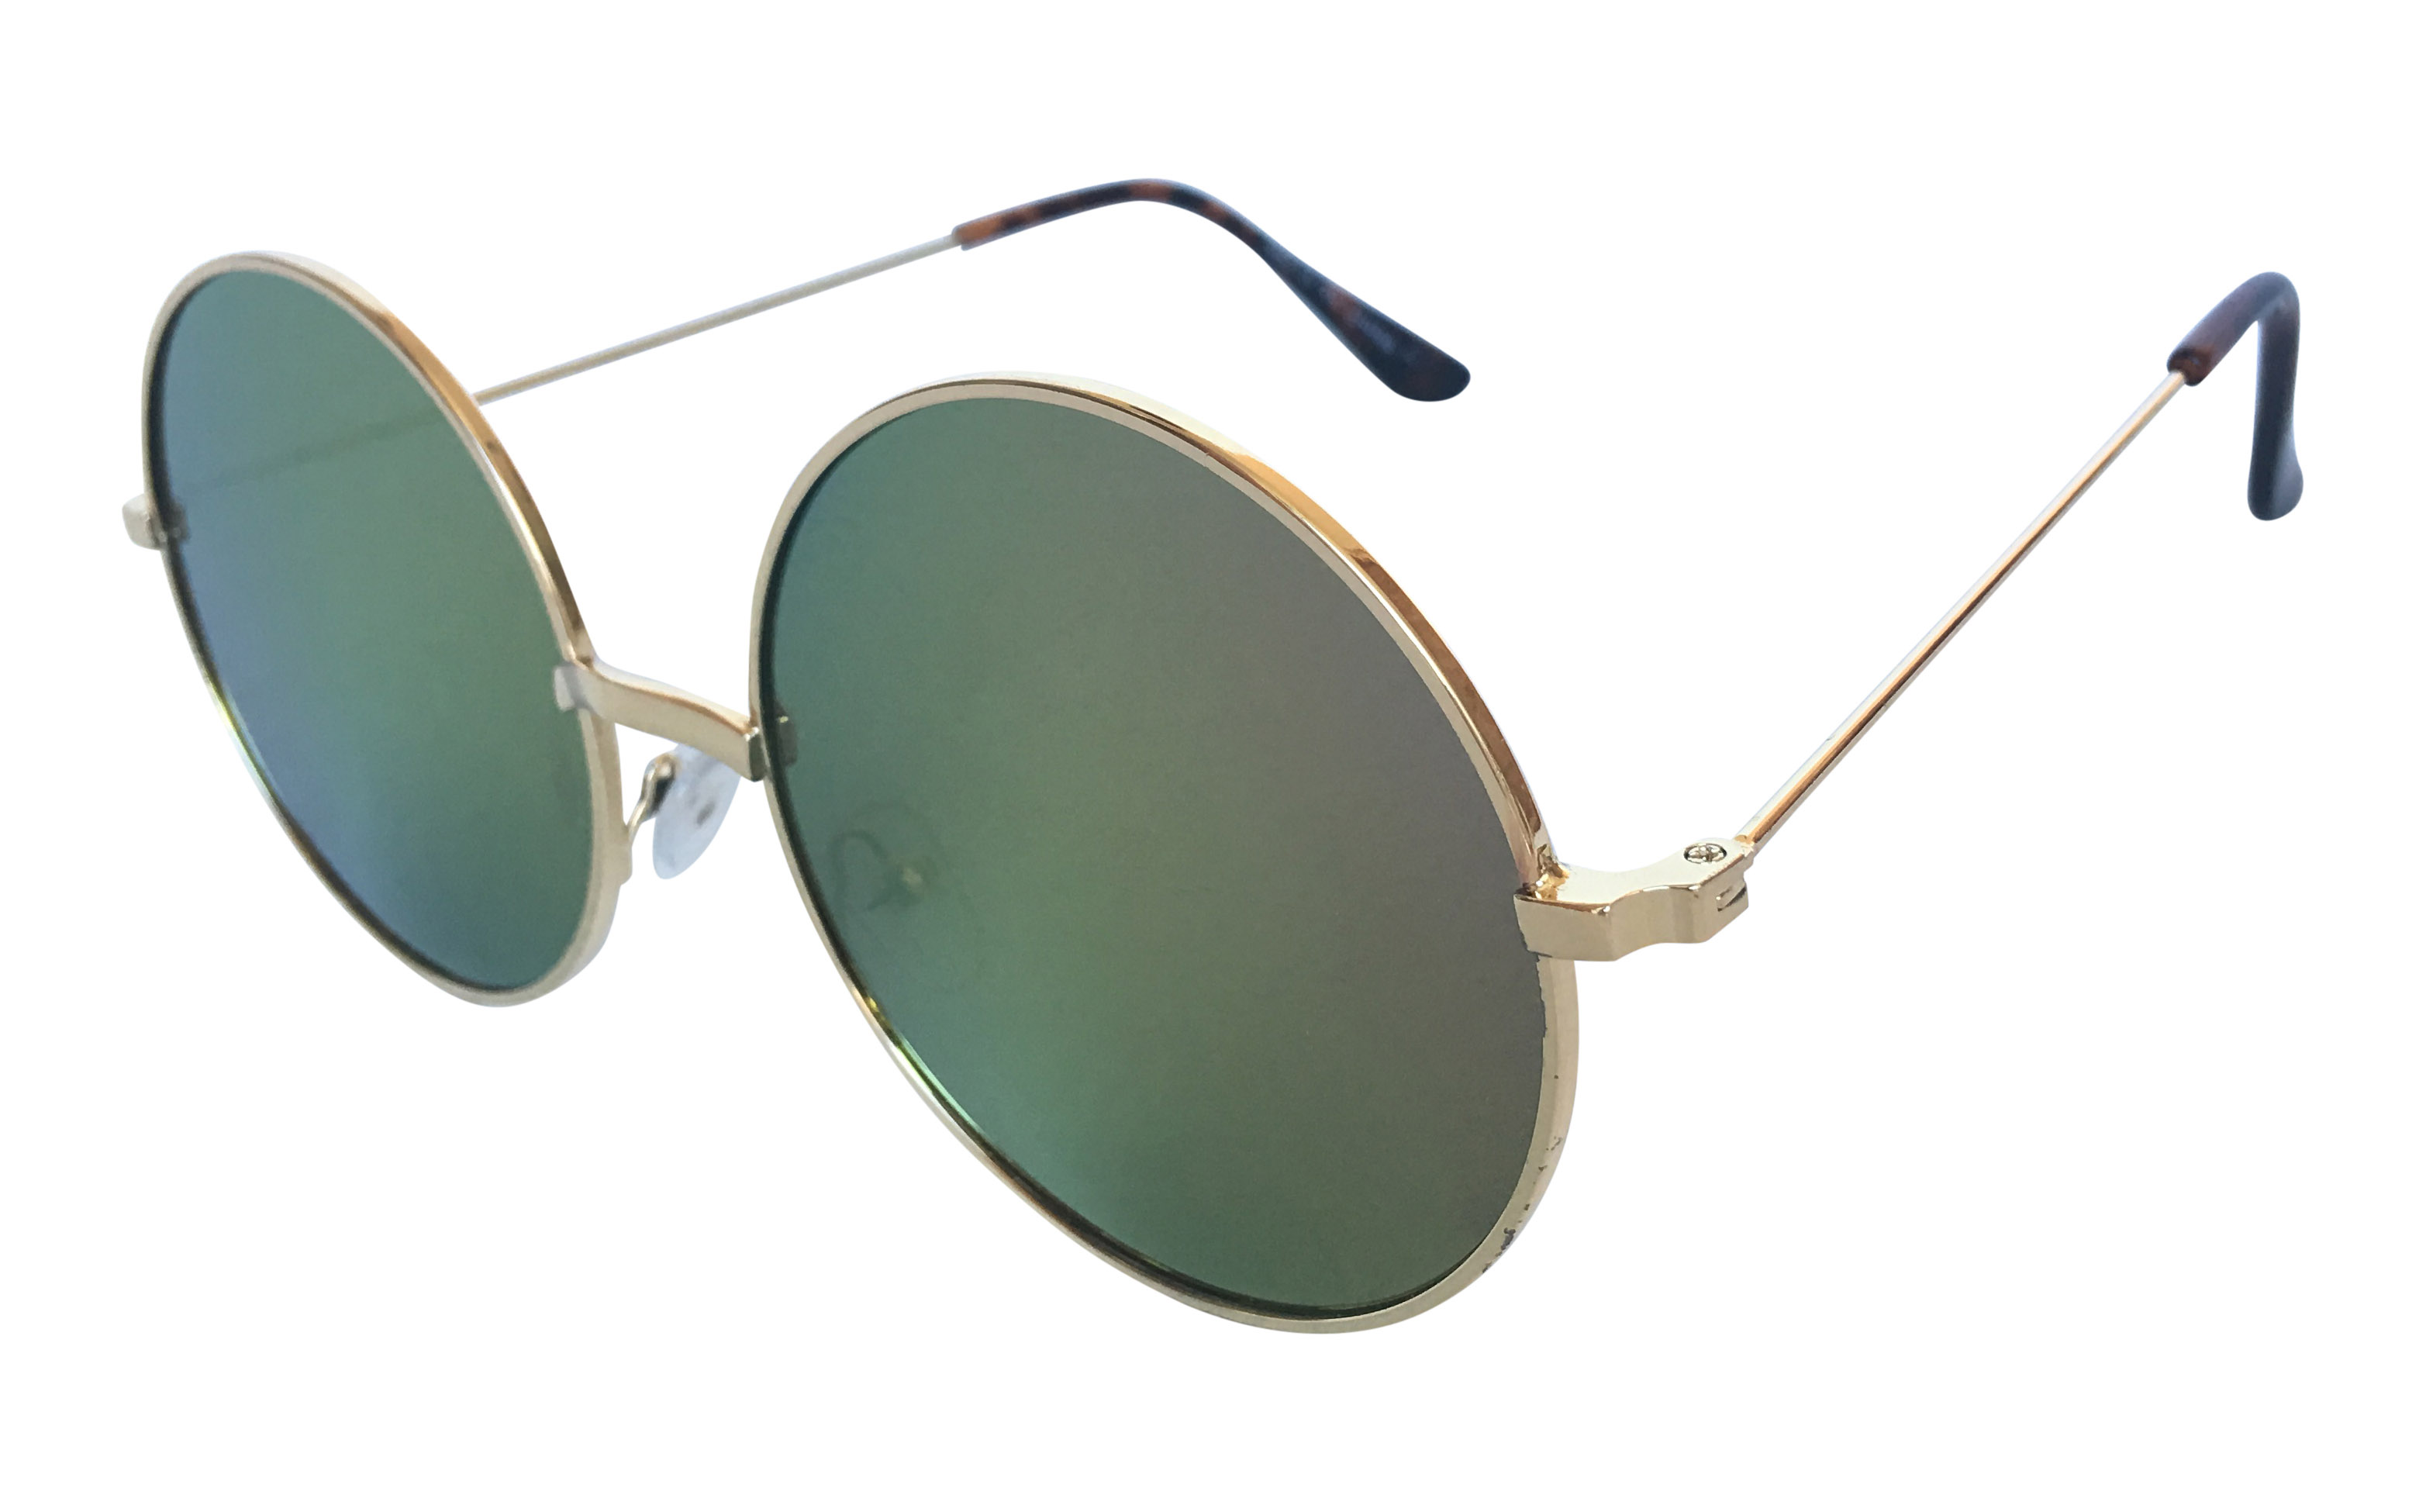 STOR Fed solbrille i guldfarvet metalstel med FLADE lyserød-grønlig changerende linser. Kendt som john lennon solbrillen. Hippie solbrille mode | retro_vintage_solbriller-2